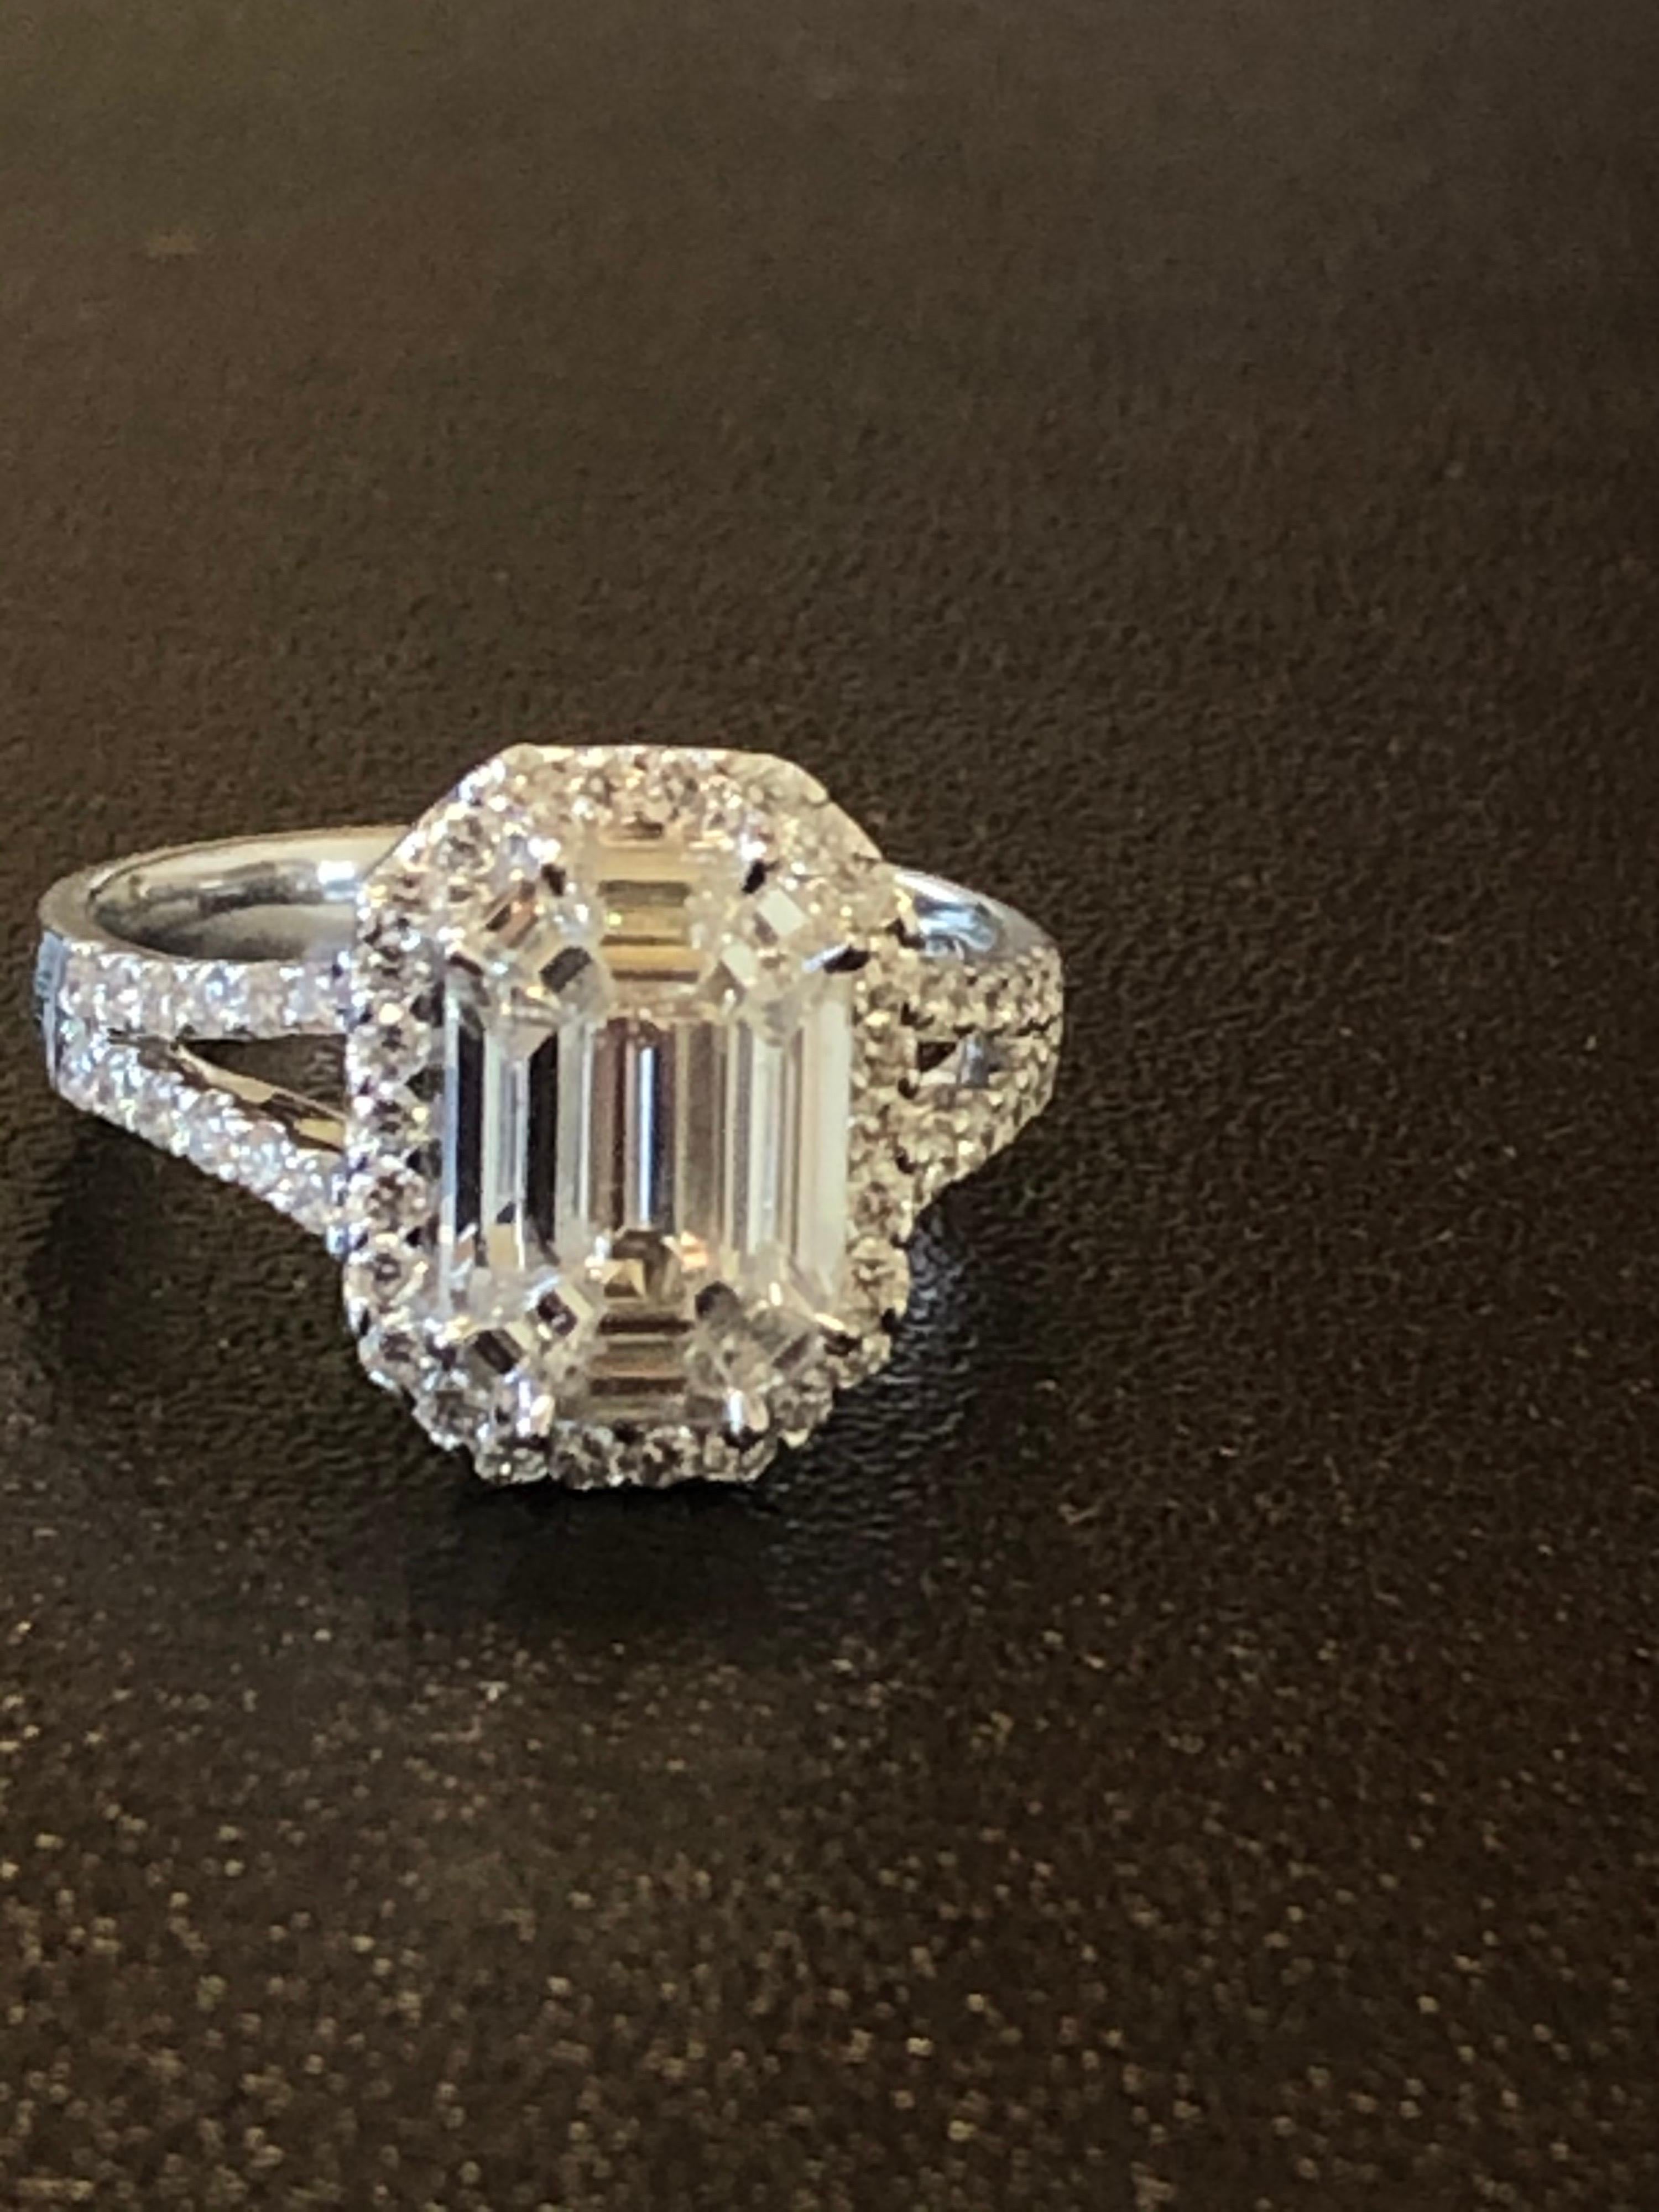 Baguette-, Smaragd- und trapezförmige Diamanten in einer Illusion, die das Aussehen eines einzelnen Smaragdsteins von 6,50 bis 7 Karat erzeugt. Der Ring ist mit einem Halo aus runden Diamanten und an der Seite des Rings besetzt. Der Ring ist in 18